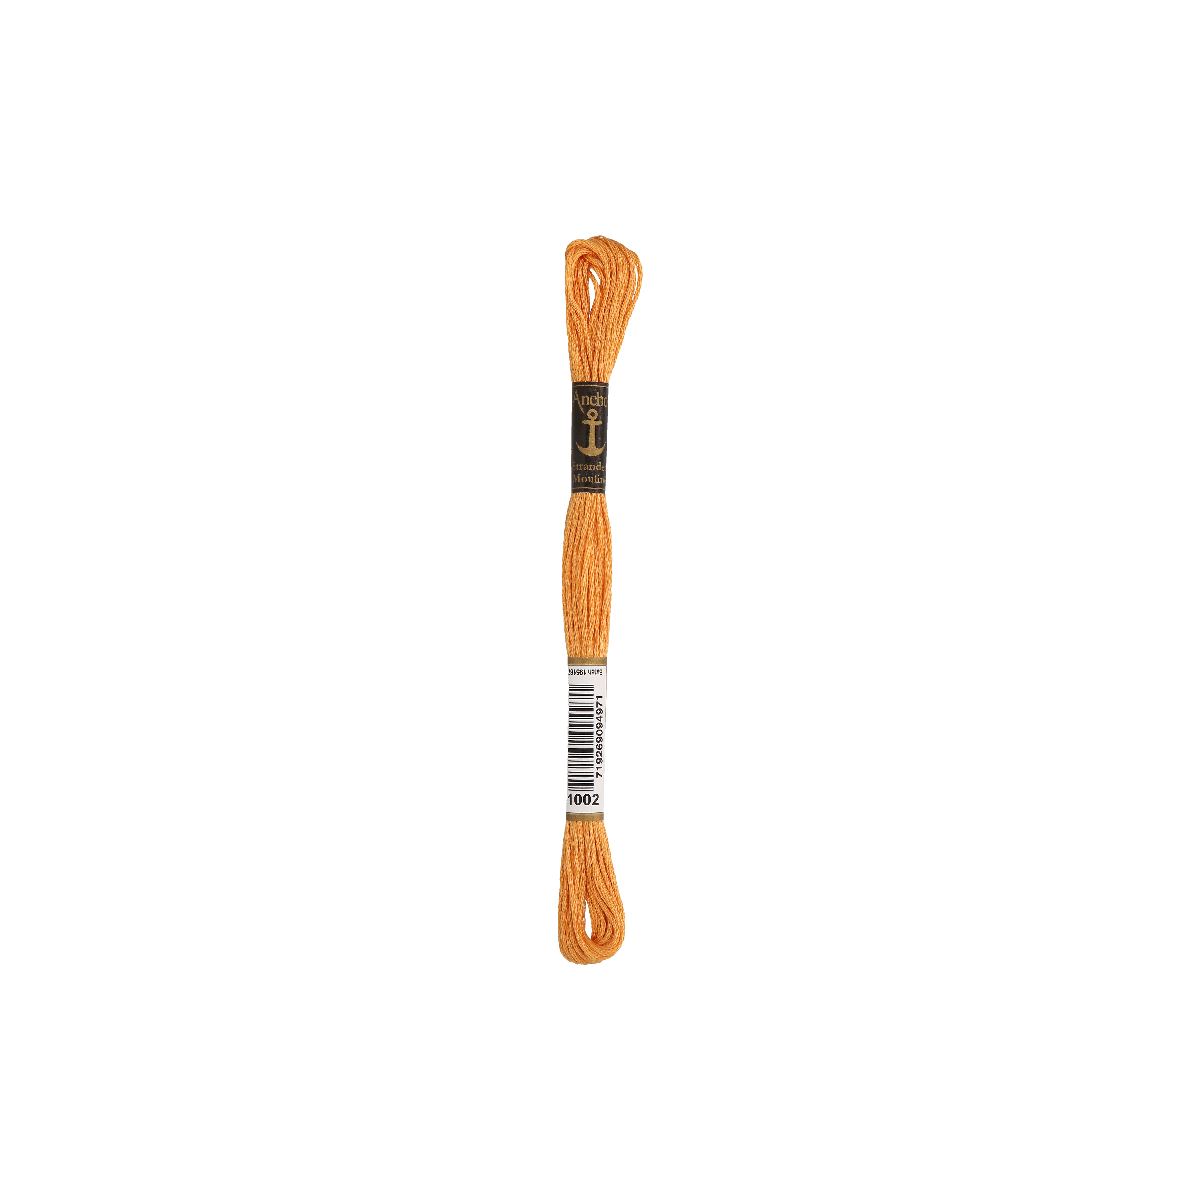 Anchor Sticktwist 8m, marrone-arancio chiaro, cotone,...